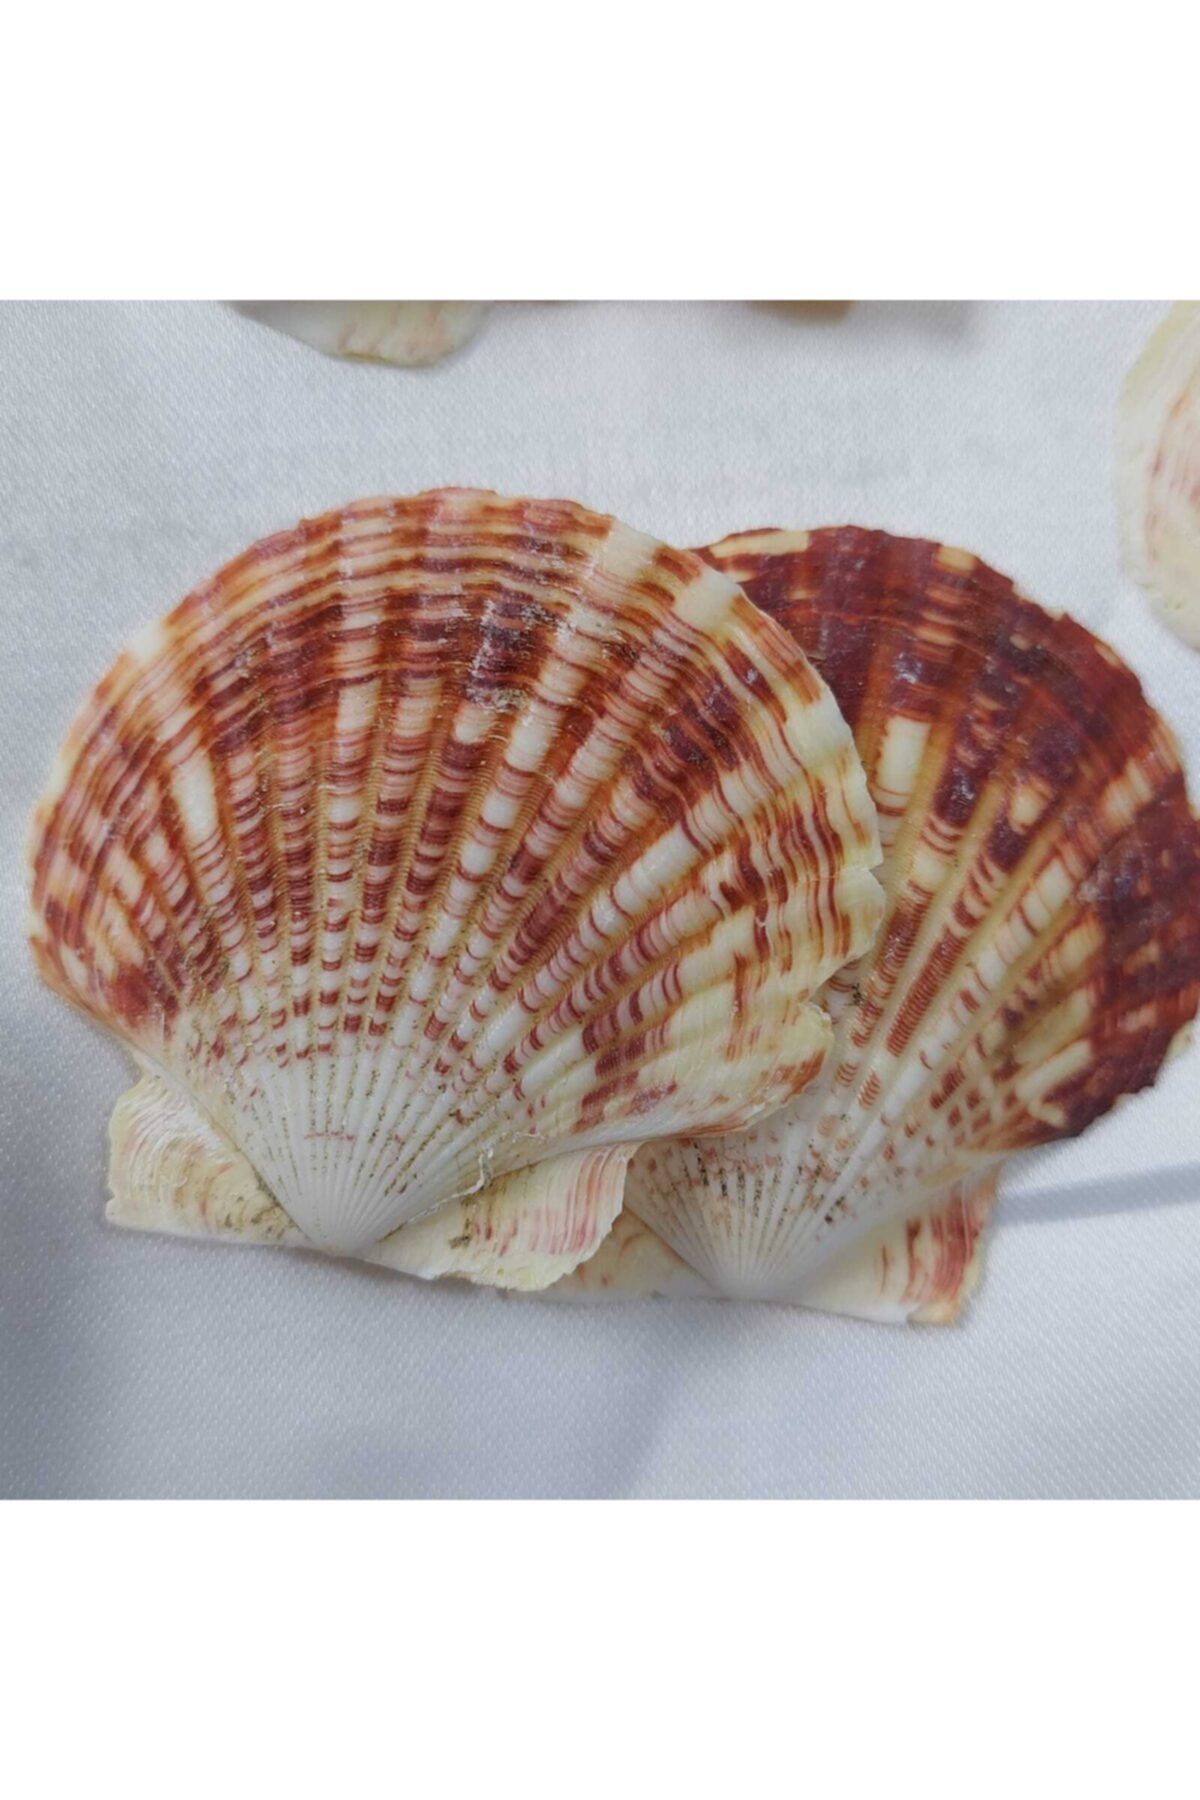 Aker Hediyelik Büyük Istiridye Deniz Kabuğu 25 Adet 5-8cm Mercan Rengi Teraryum Deniz Kabukları